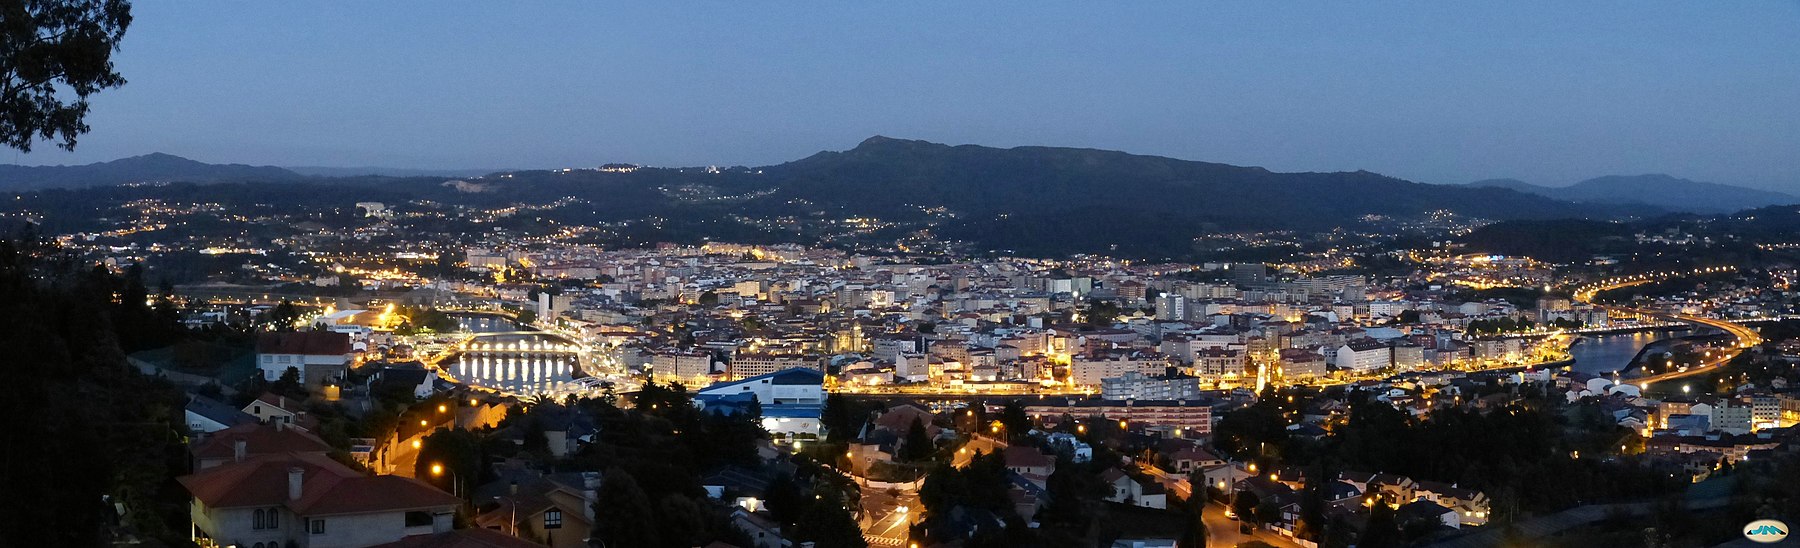 Pontevedra-Panorama de noche (9136213864).jpg